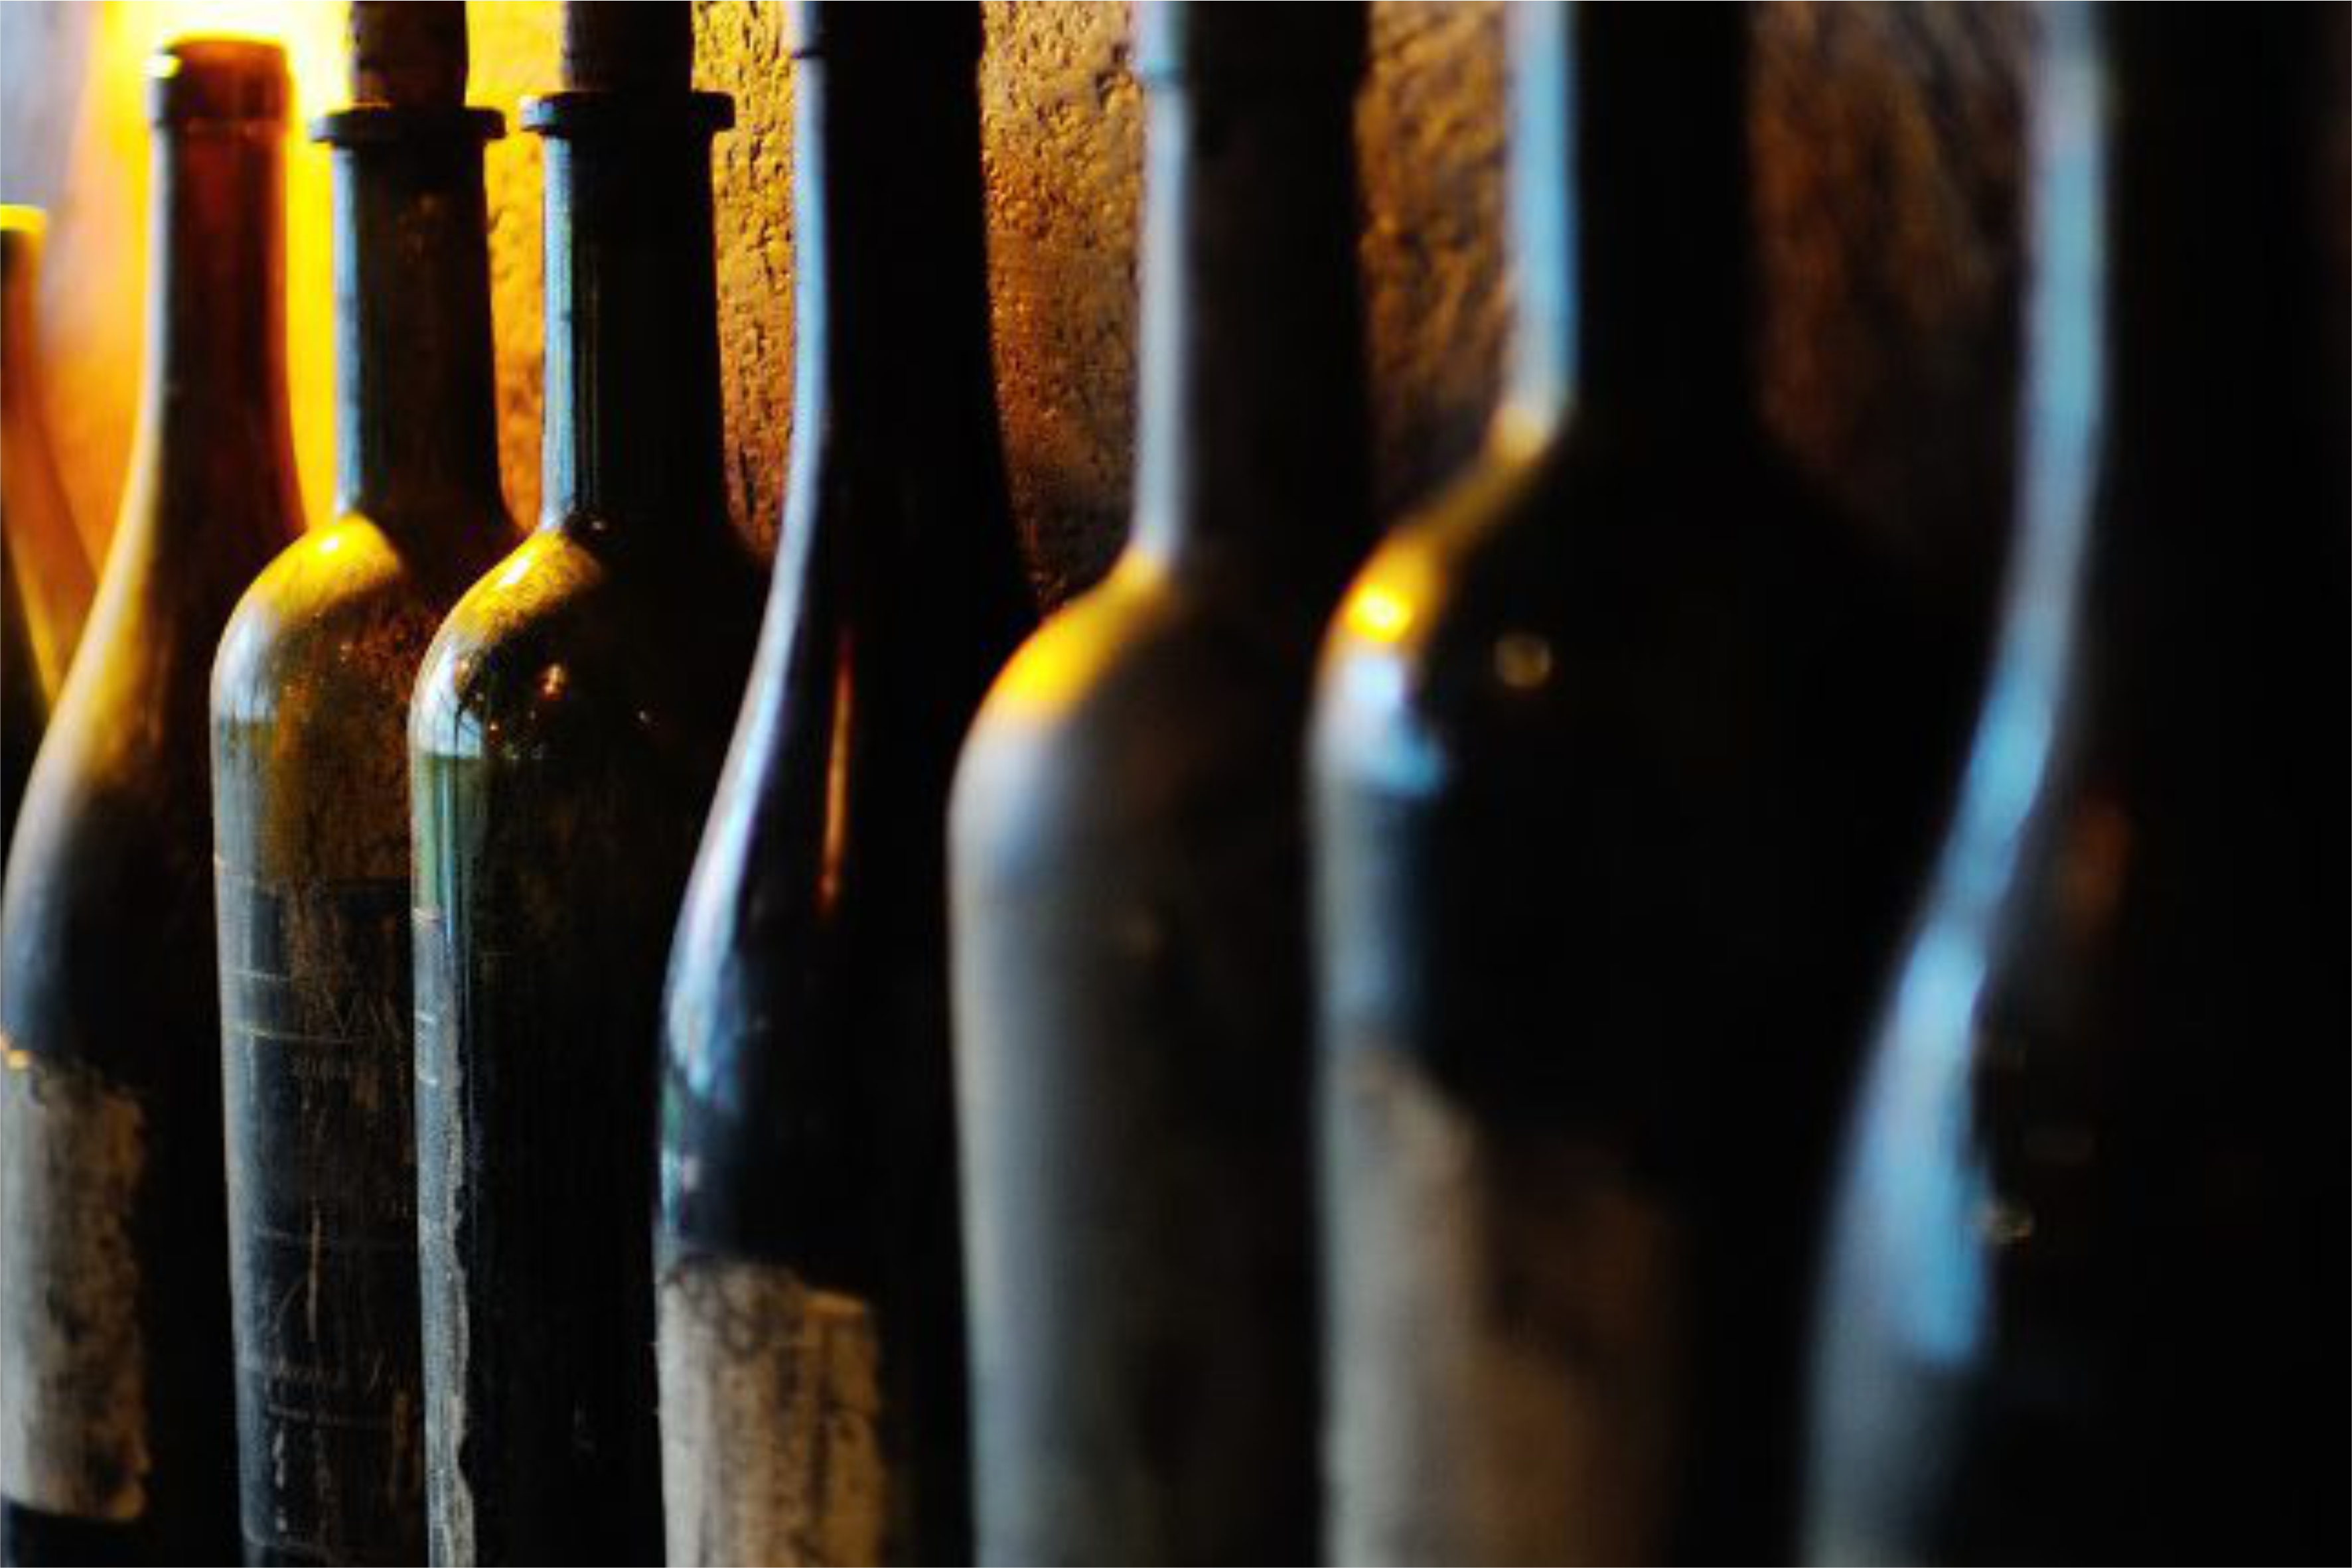 Dark coloured bottles lined up on a shelf